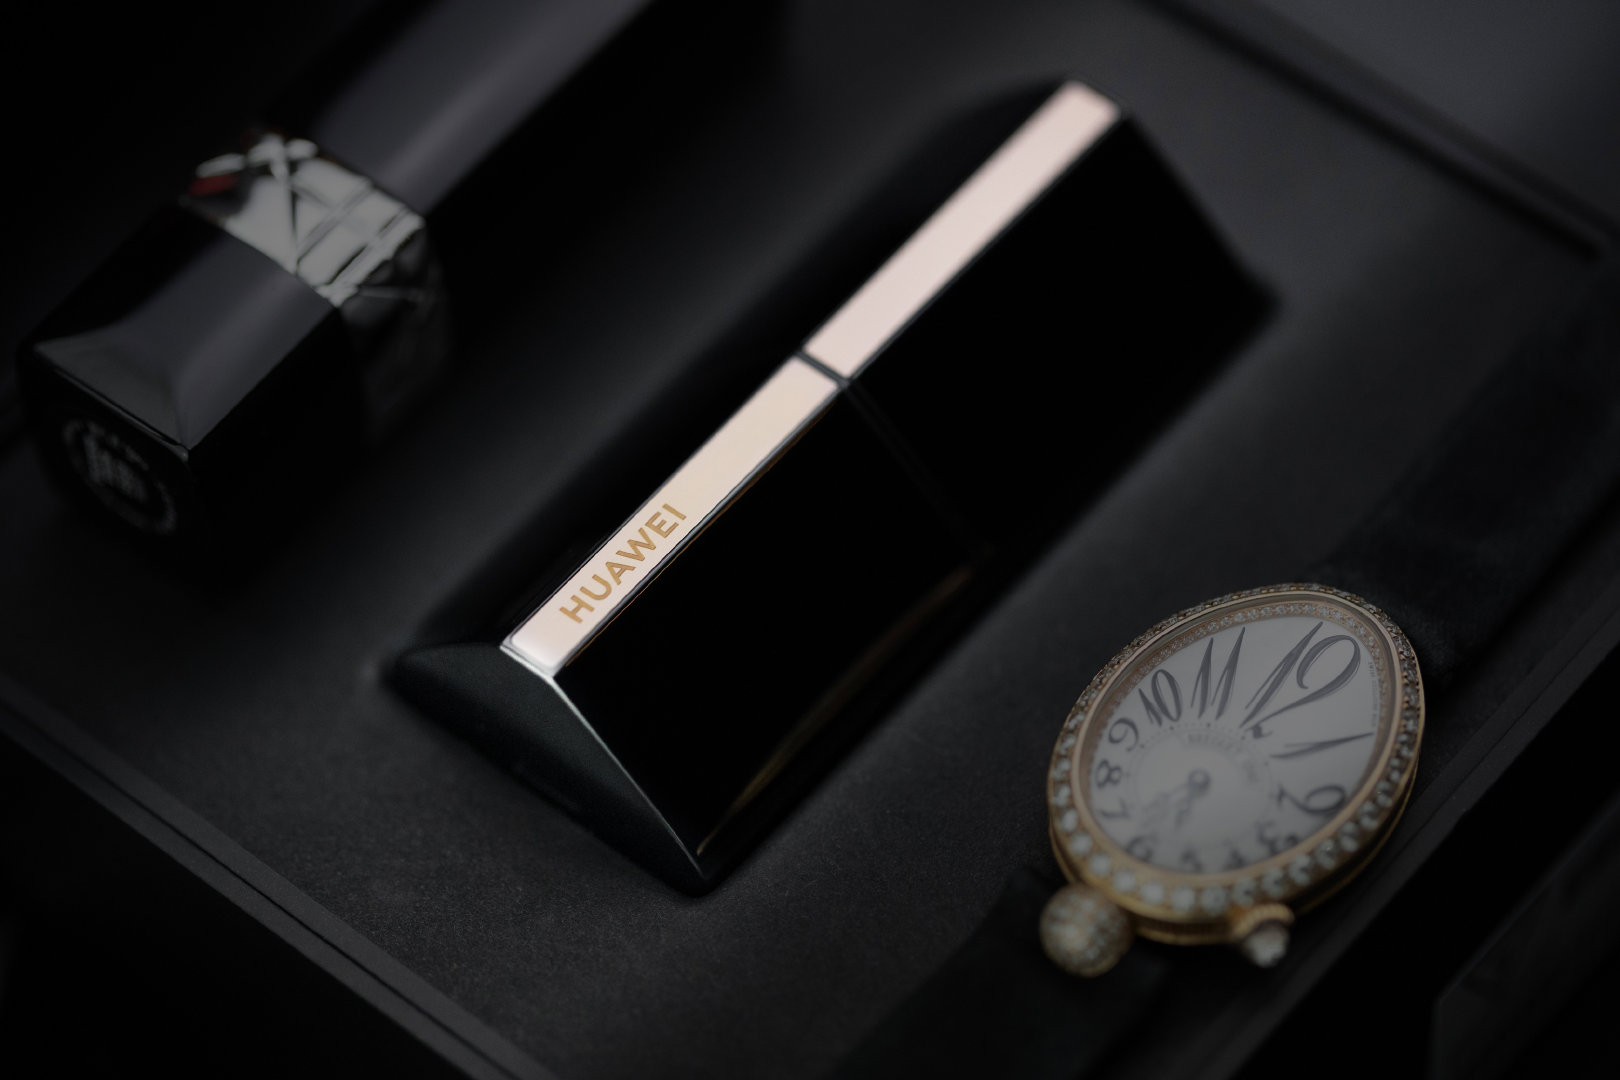 Huawei ra mắt tai nghe FreeBuds Lipstick tại VN:
Thiết kế hình thỏi son, giá 4.9 triệu đồng